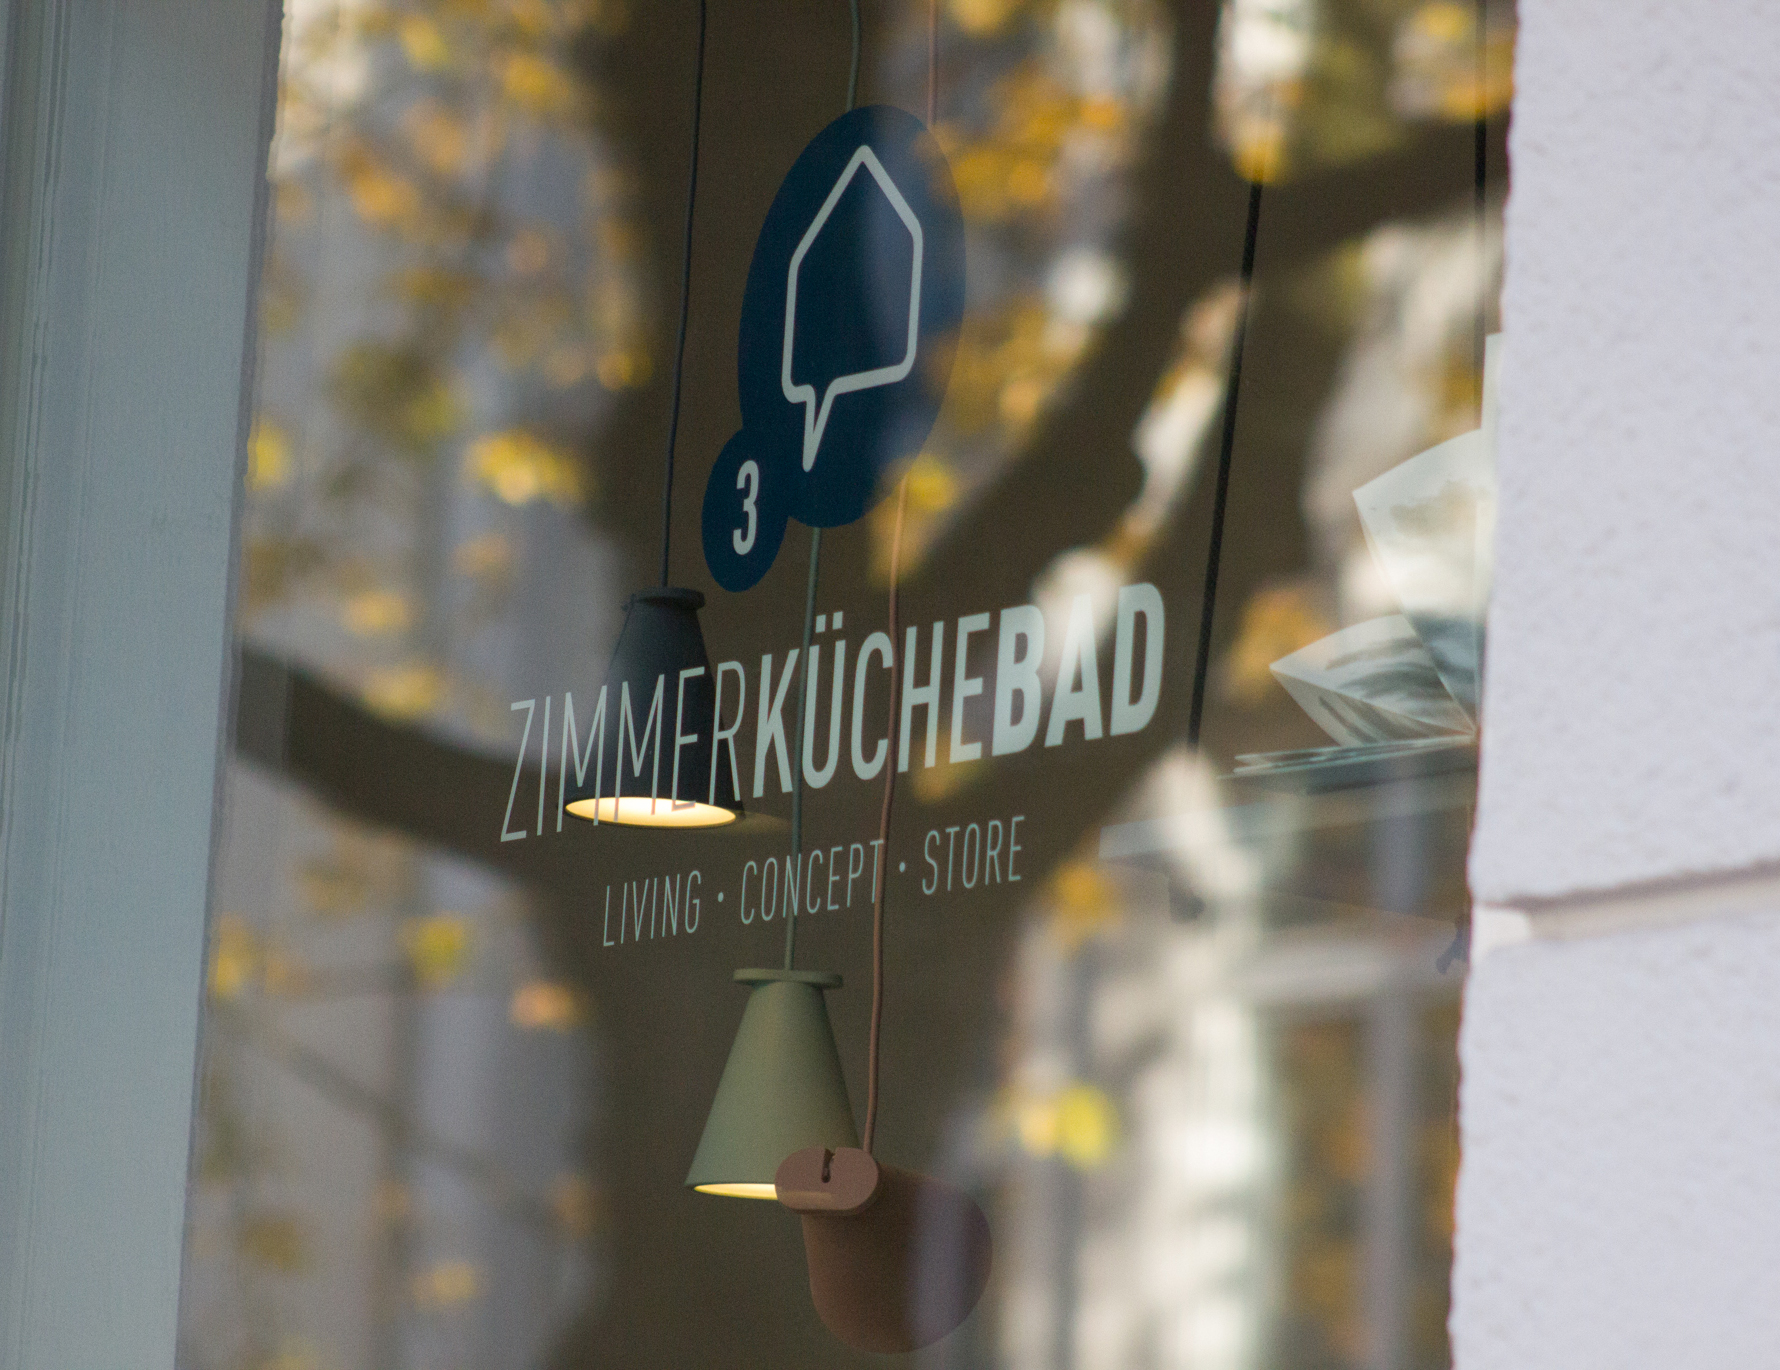 3ZimmerKücheBad Concept-Store in Essen-Rüttenscheid